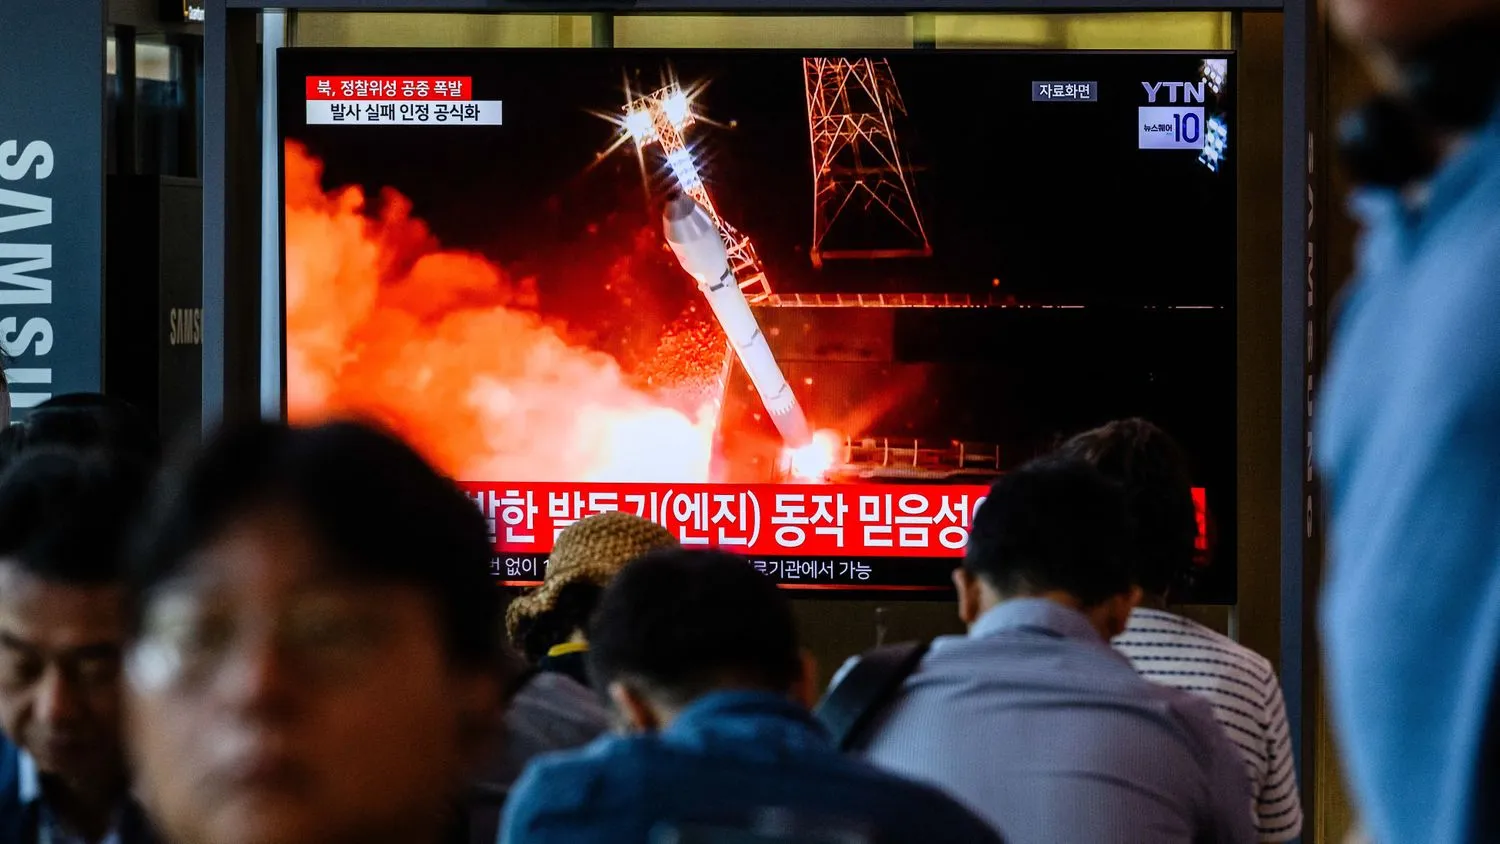 Mehr über den Artikel erfahren USA verurteilen gescheiterten nordkoreanischen Raketenstart als Verletzung der internationalen Sicherheit: Bericht